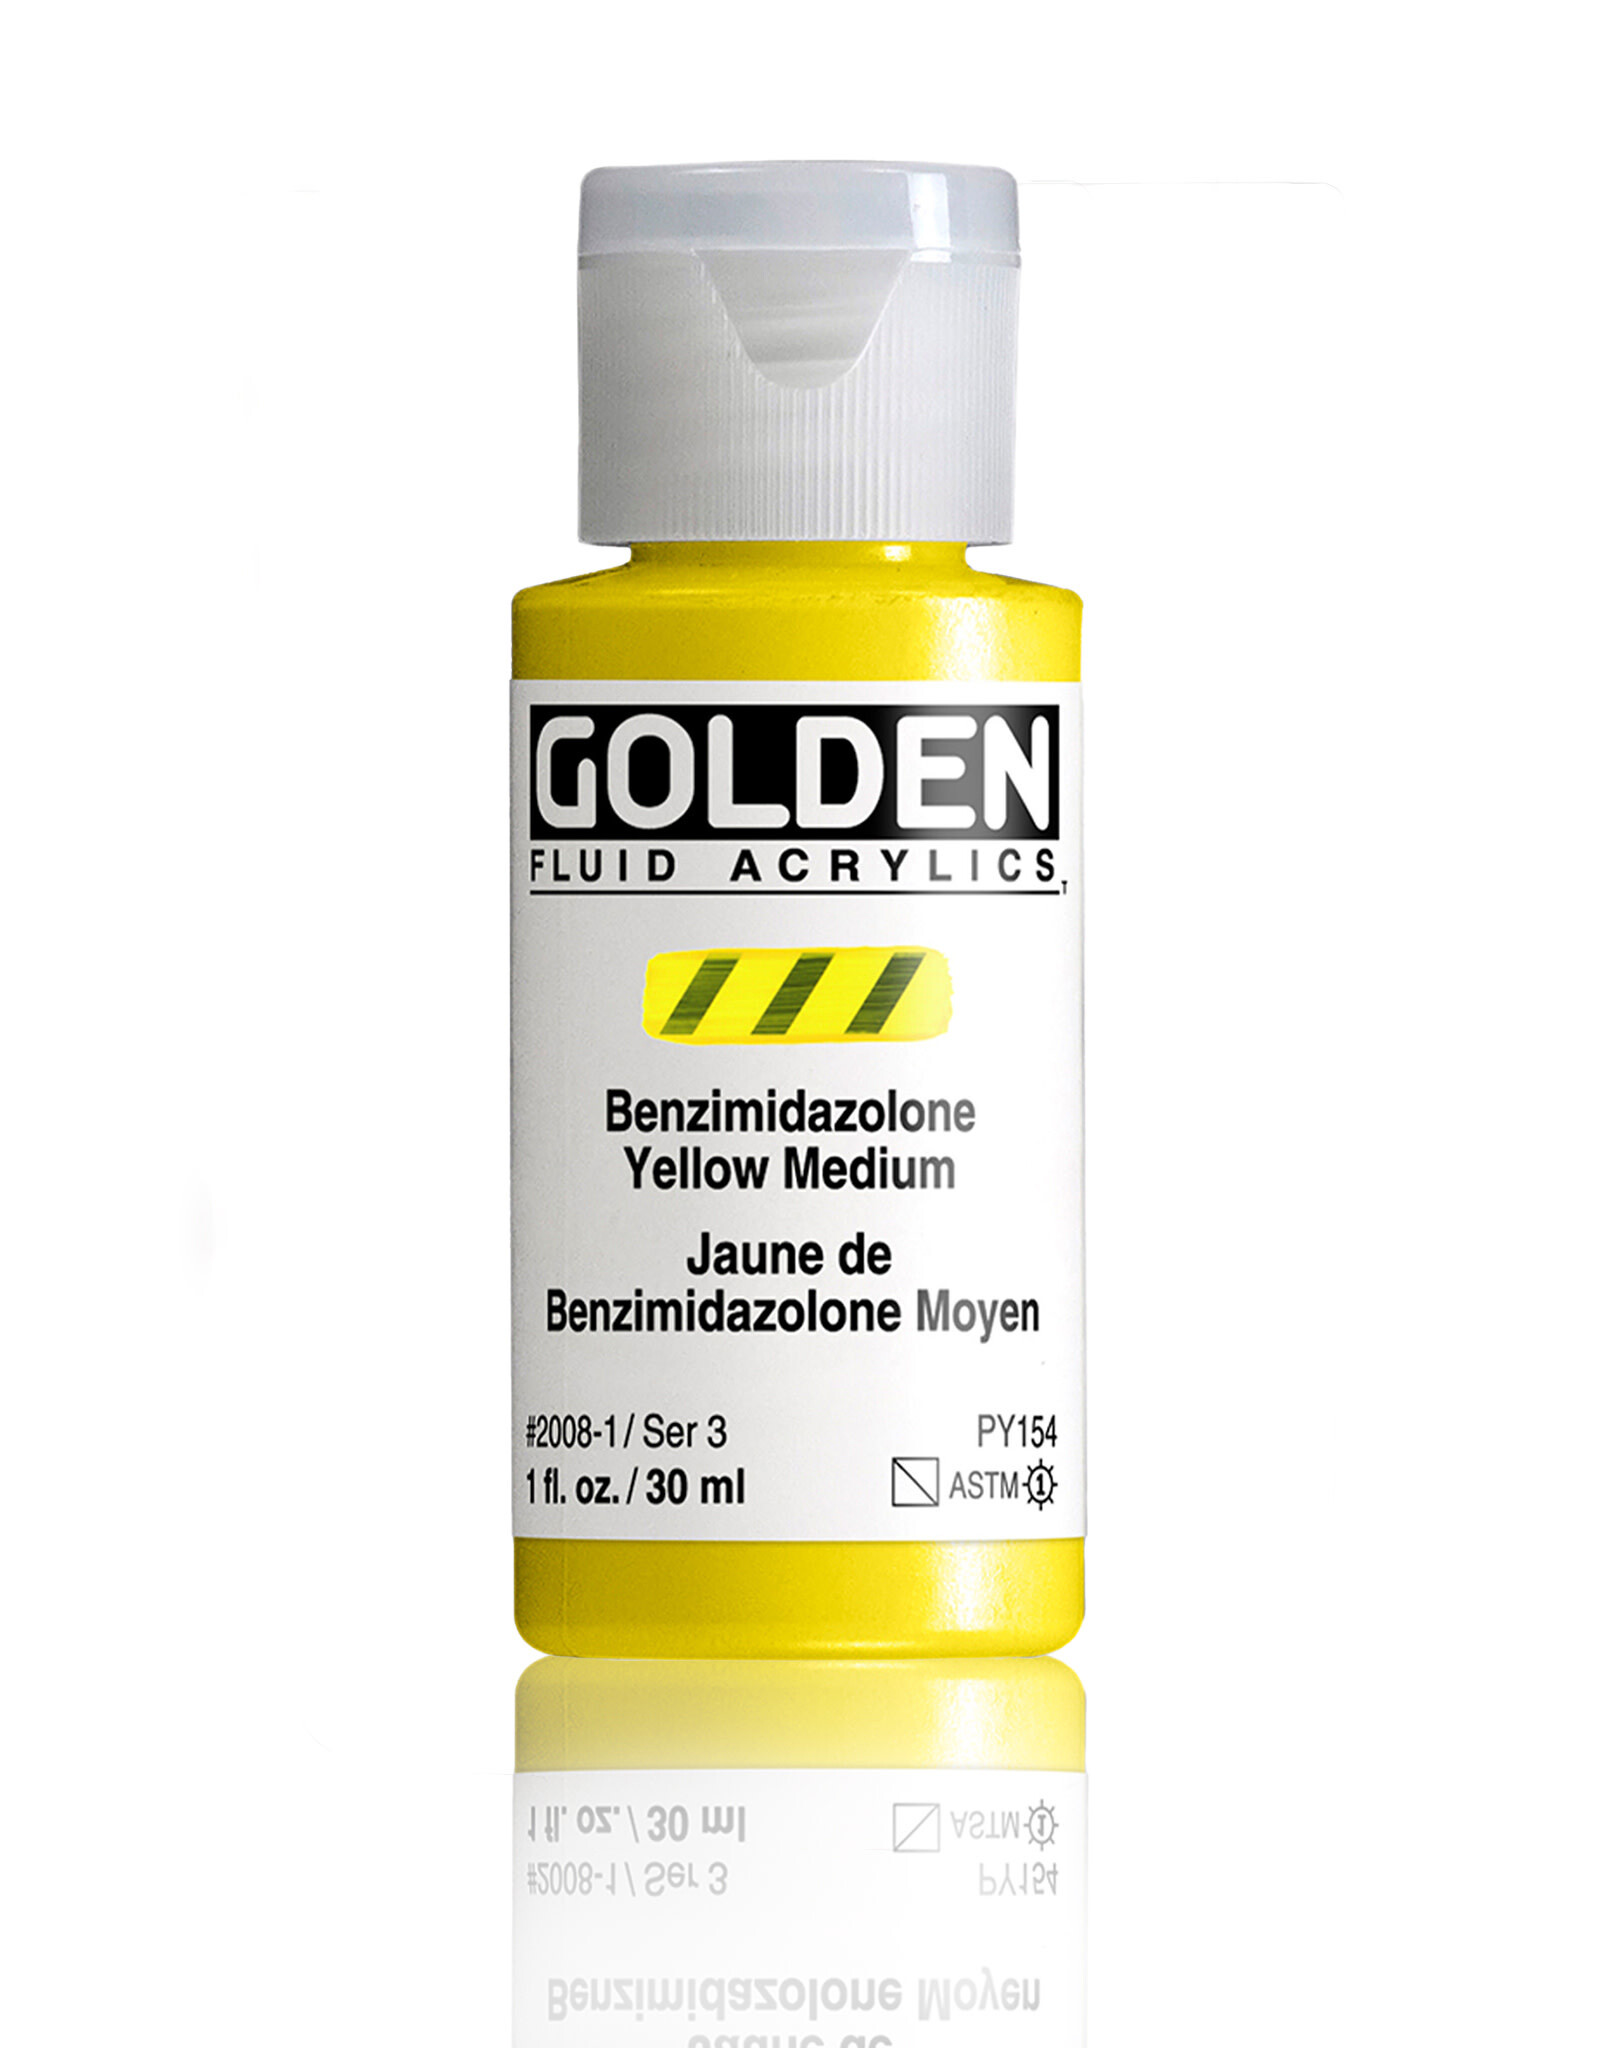 Golden Golden Fluid Acrylics, Benzimidazolone Yellow Medium 1oz Cylinder